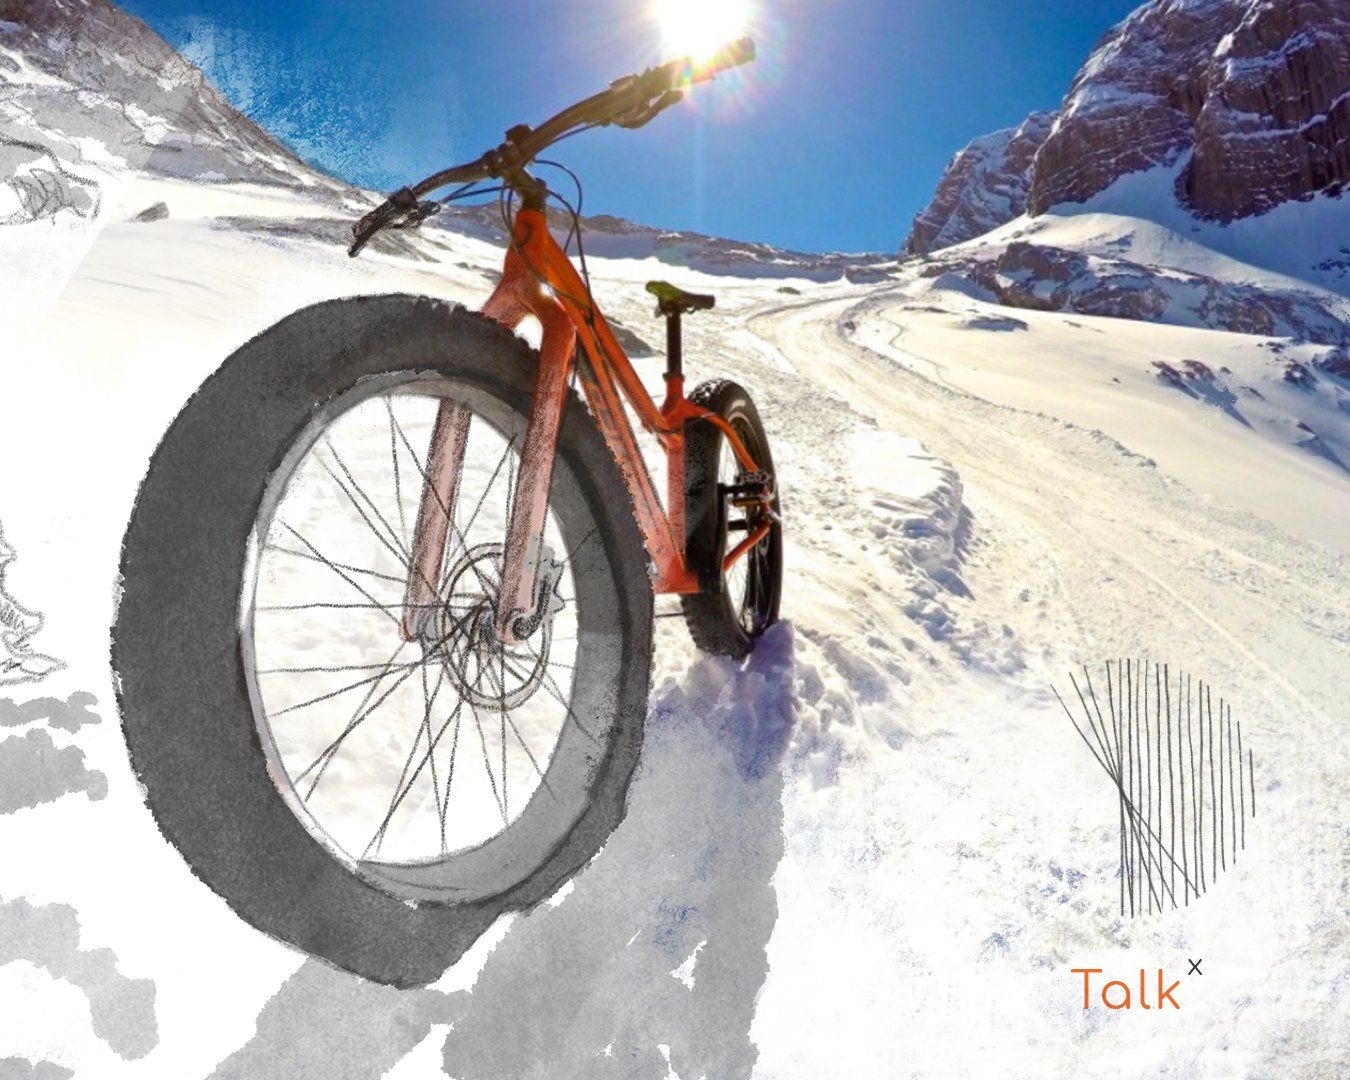 Fatbiken im Schnee, Ungewöhnlicher Wintersport als Markenstrategie